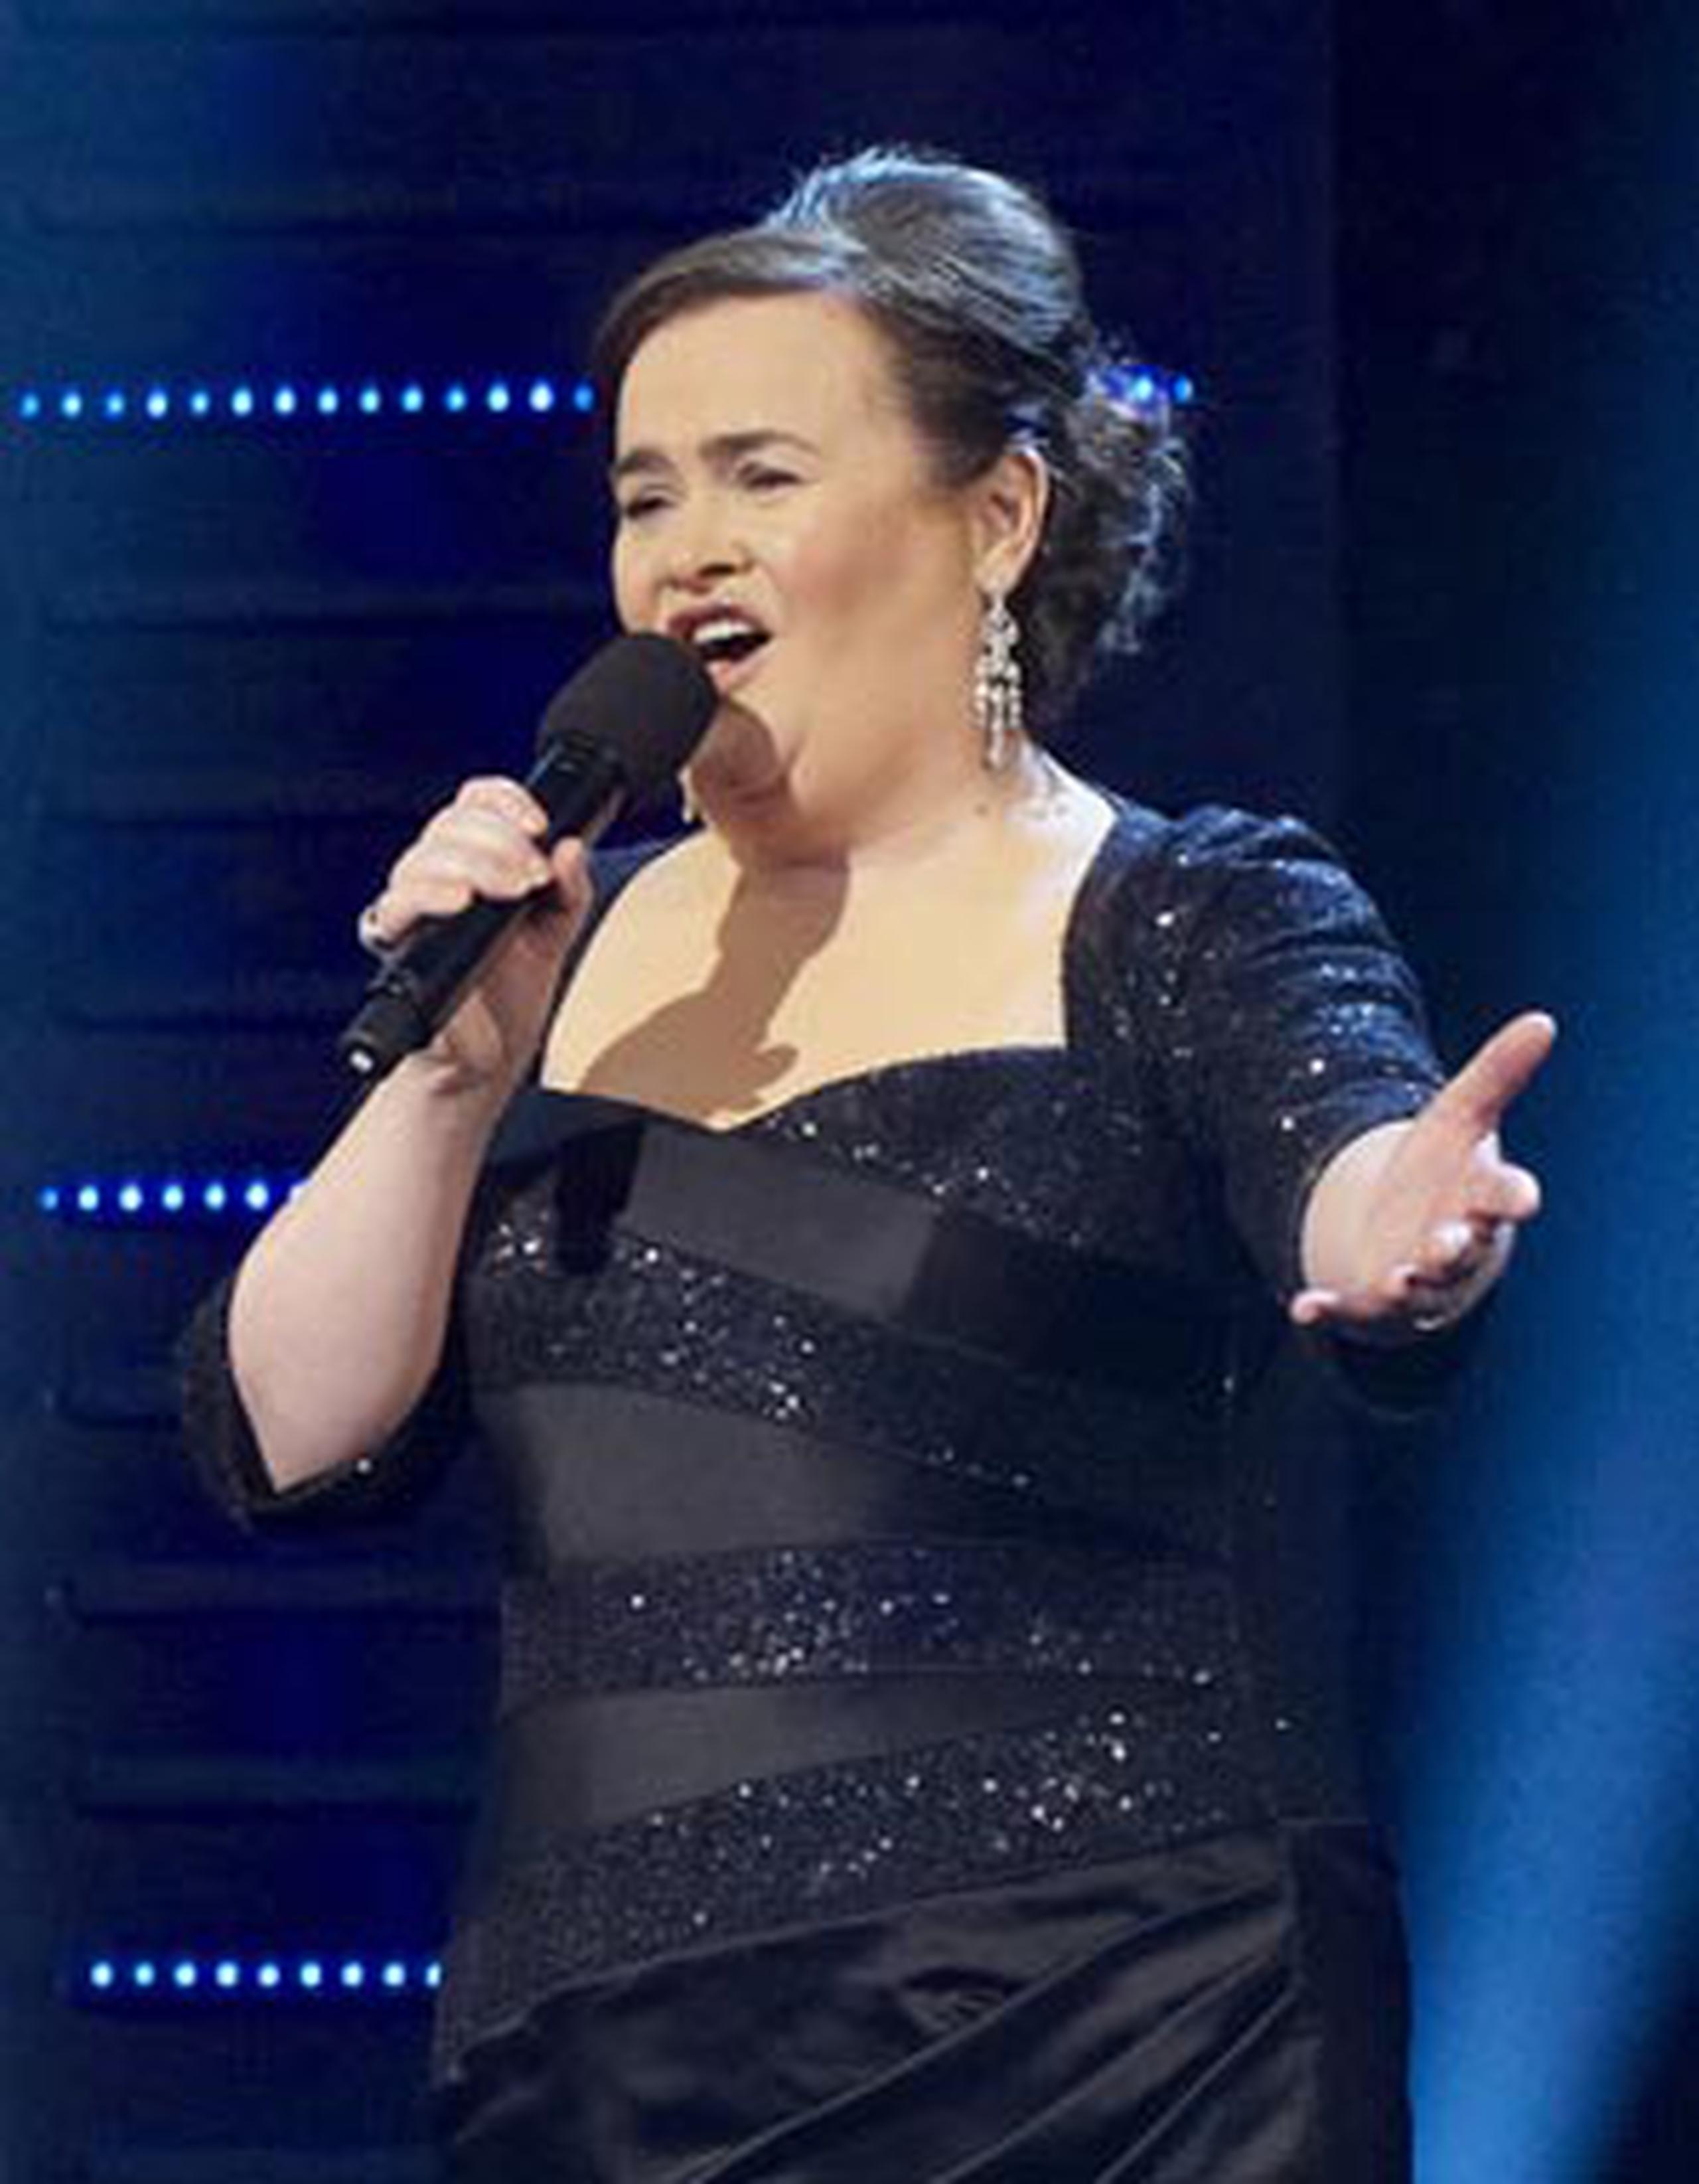 La cantante se hizo famosa tras causar gran sensación entre los televidentes cuando cantó "I Dreamed a Dream" en "Britains Got Talent". (Archivo)